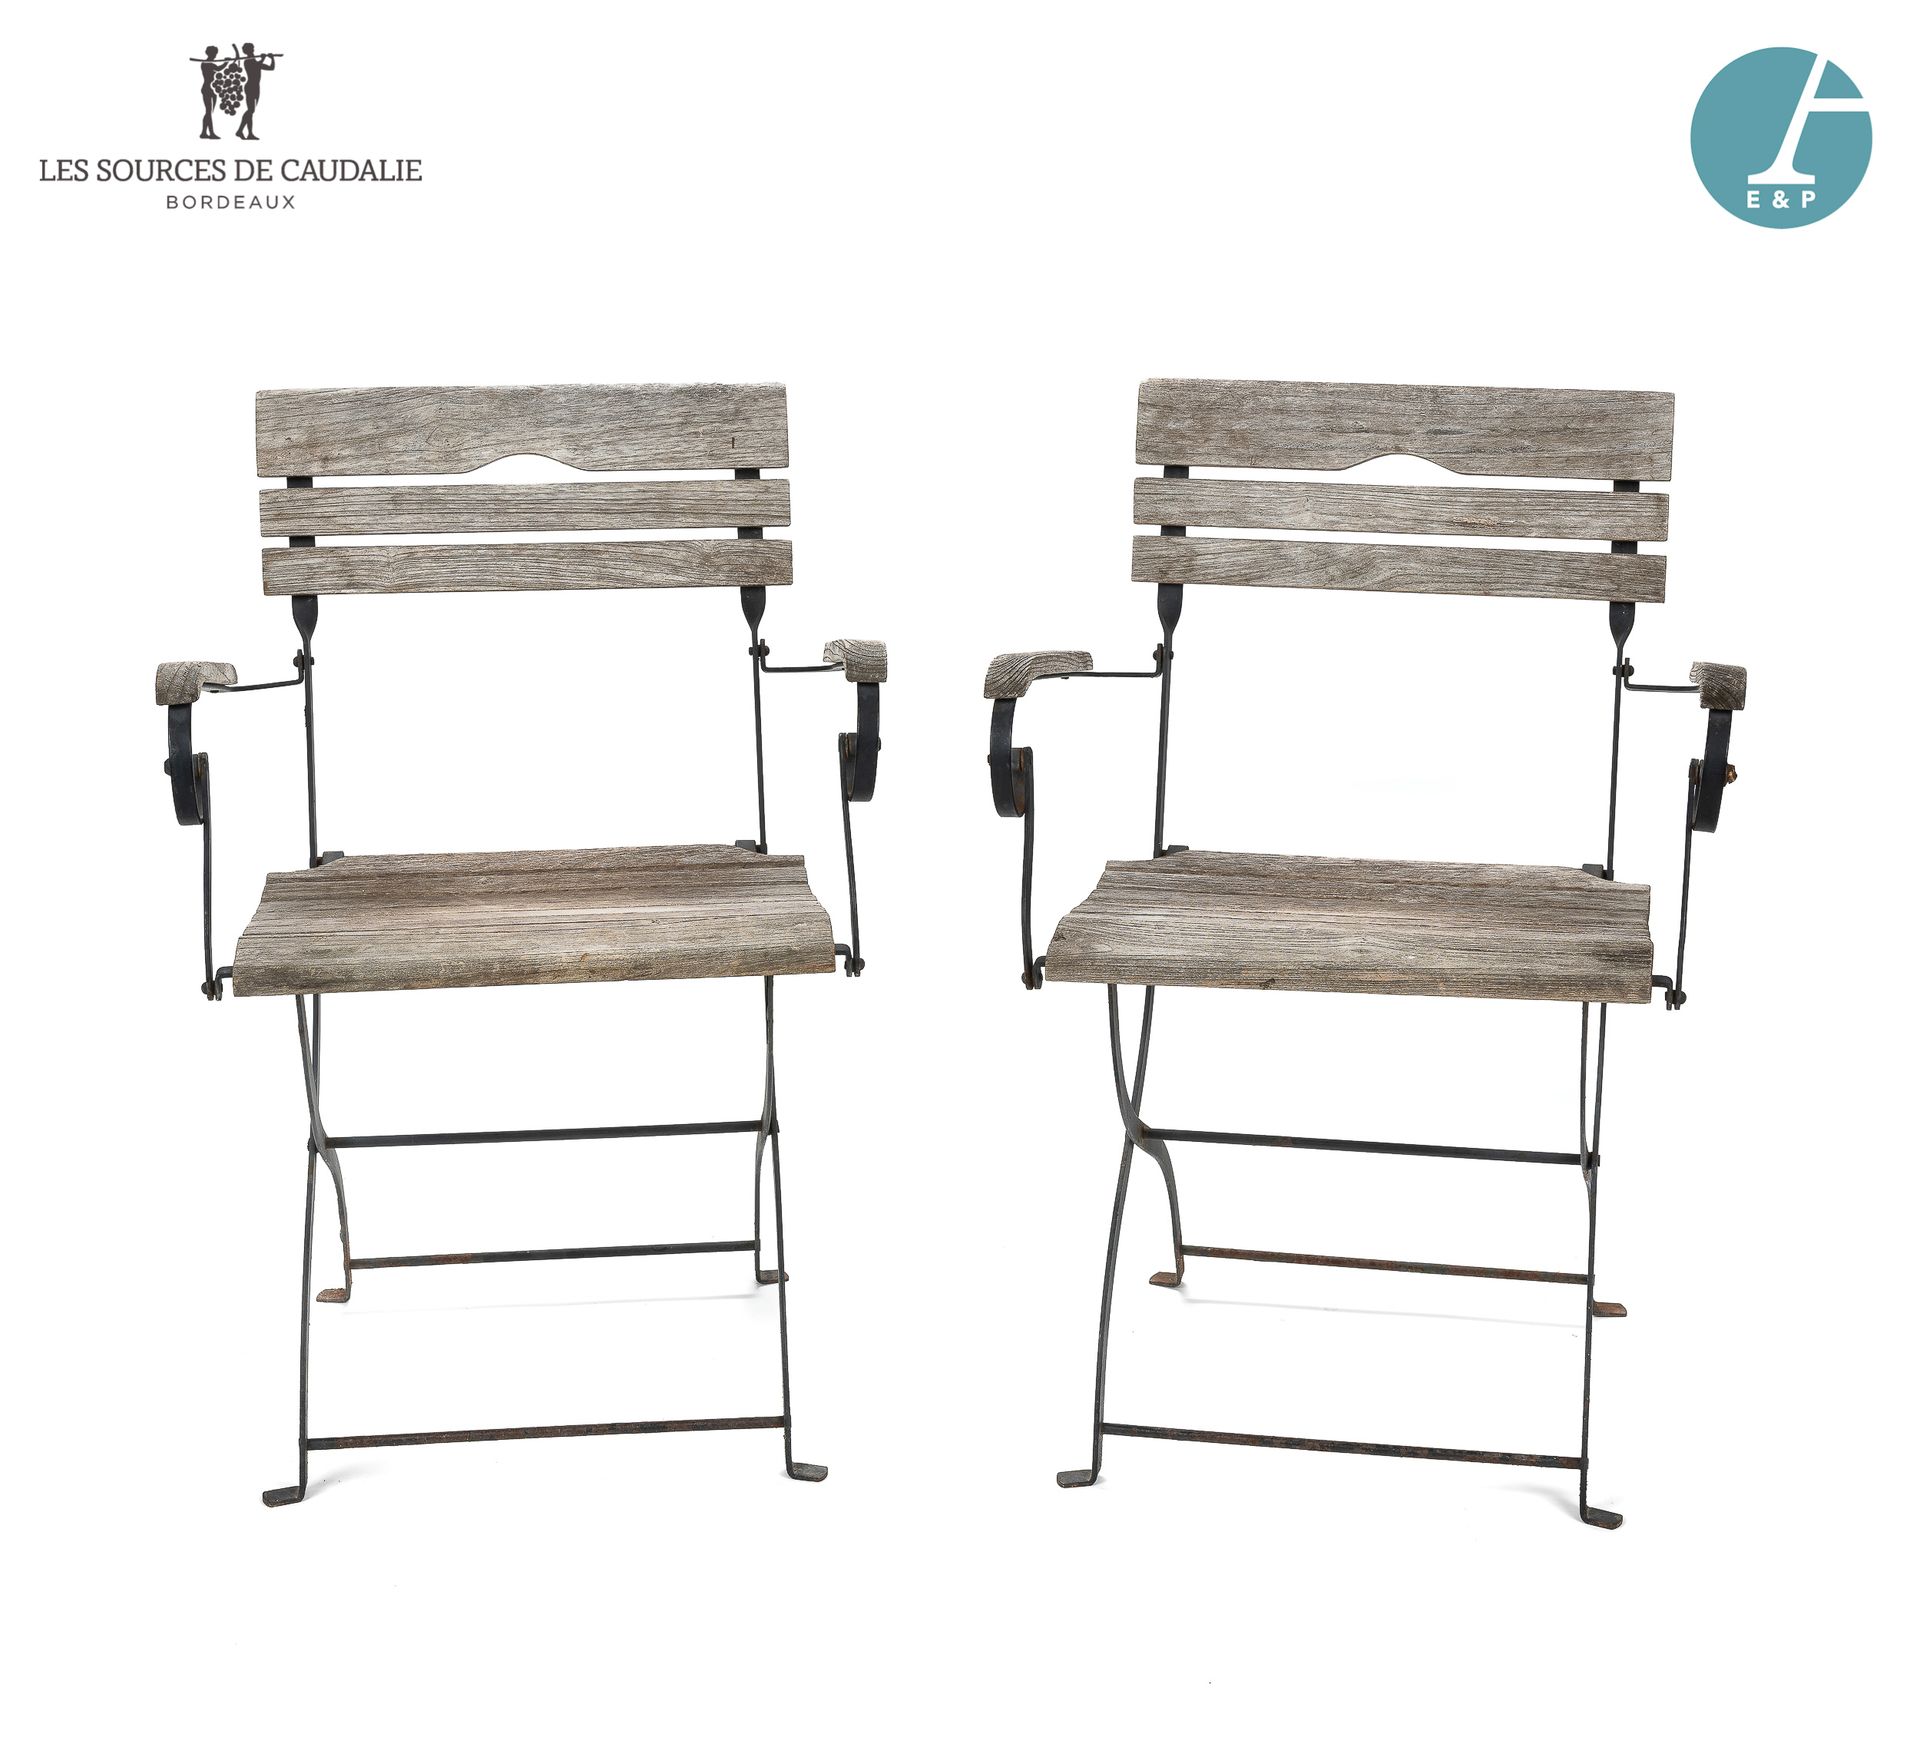 Null 一对锻铁花园扶手椅，柚木座椅和椅背。

使用条件。

扶手椅 高：89.5厘米 - 宽：64.5厘米 - 深：55厘米